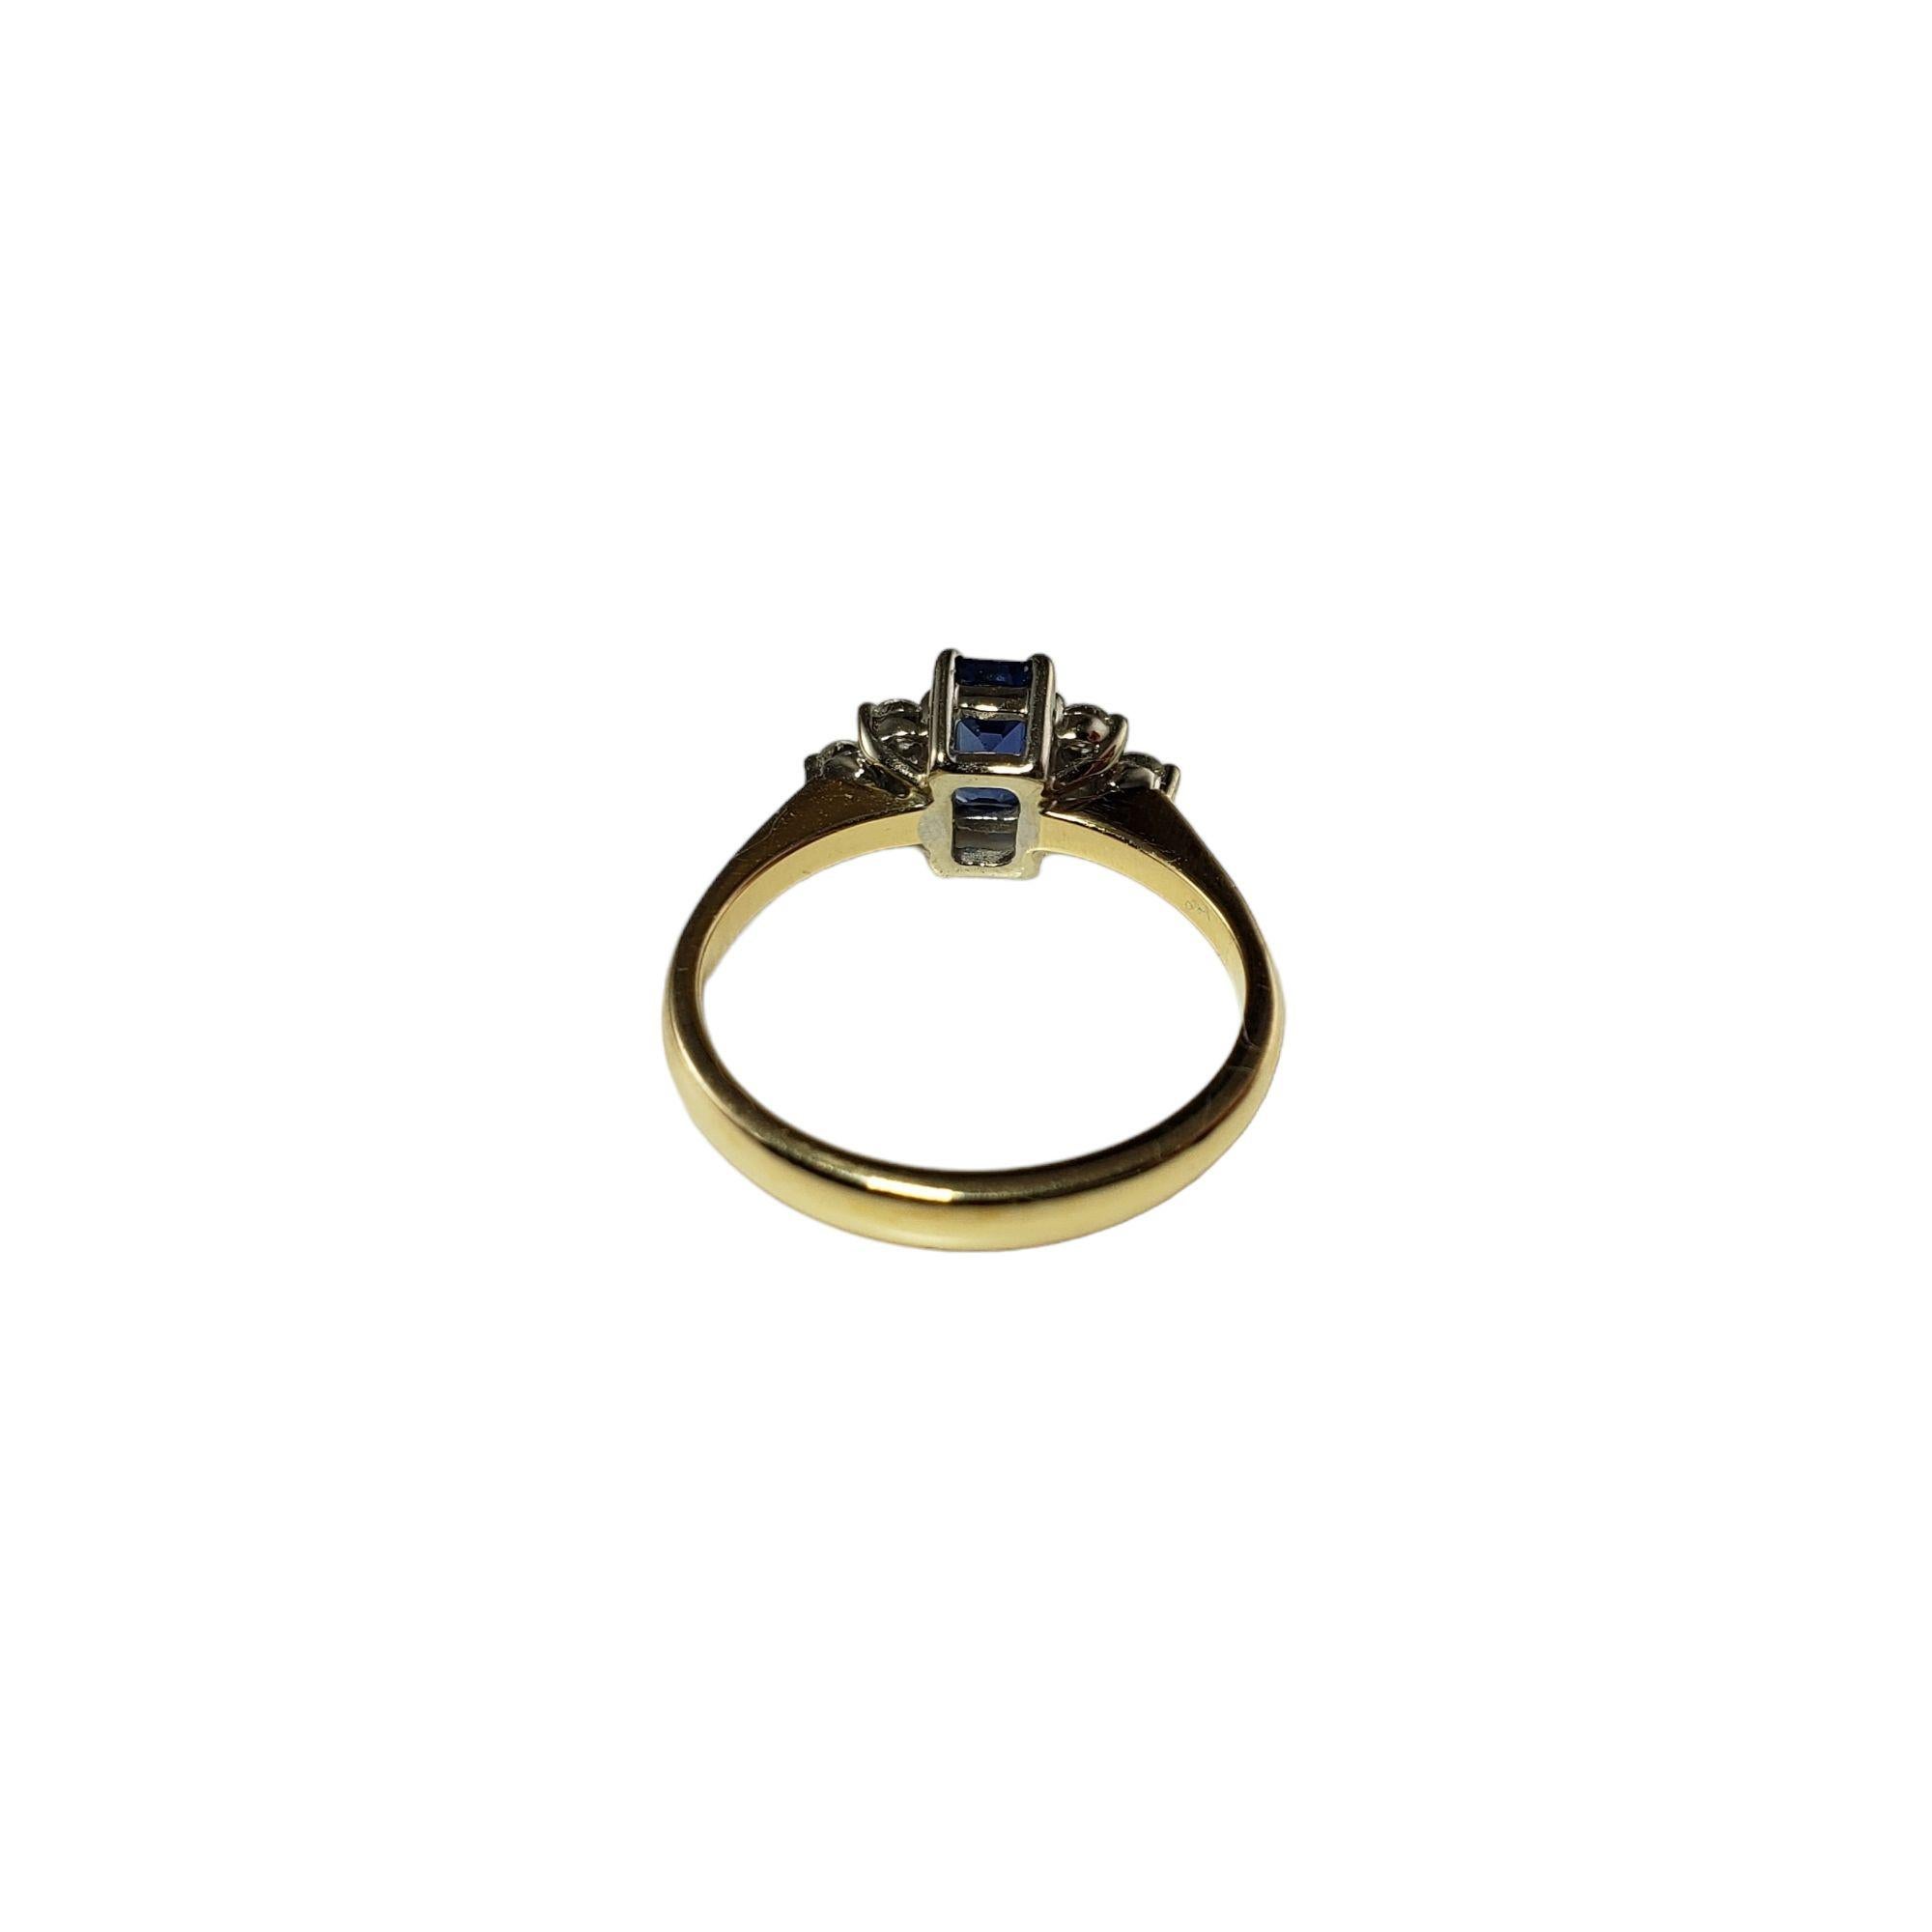 Vintage 14 Karat Yellow Gold Sapphire and Diamond Ring Size 6 JAGi Certified-

Cette jolie bague présente un saphir de taille émeraude et six diamants ronds de taille brillante sertis dans de l'or jaune 14K classique. Largeur : 7 mm. Tige : 2